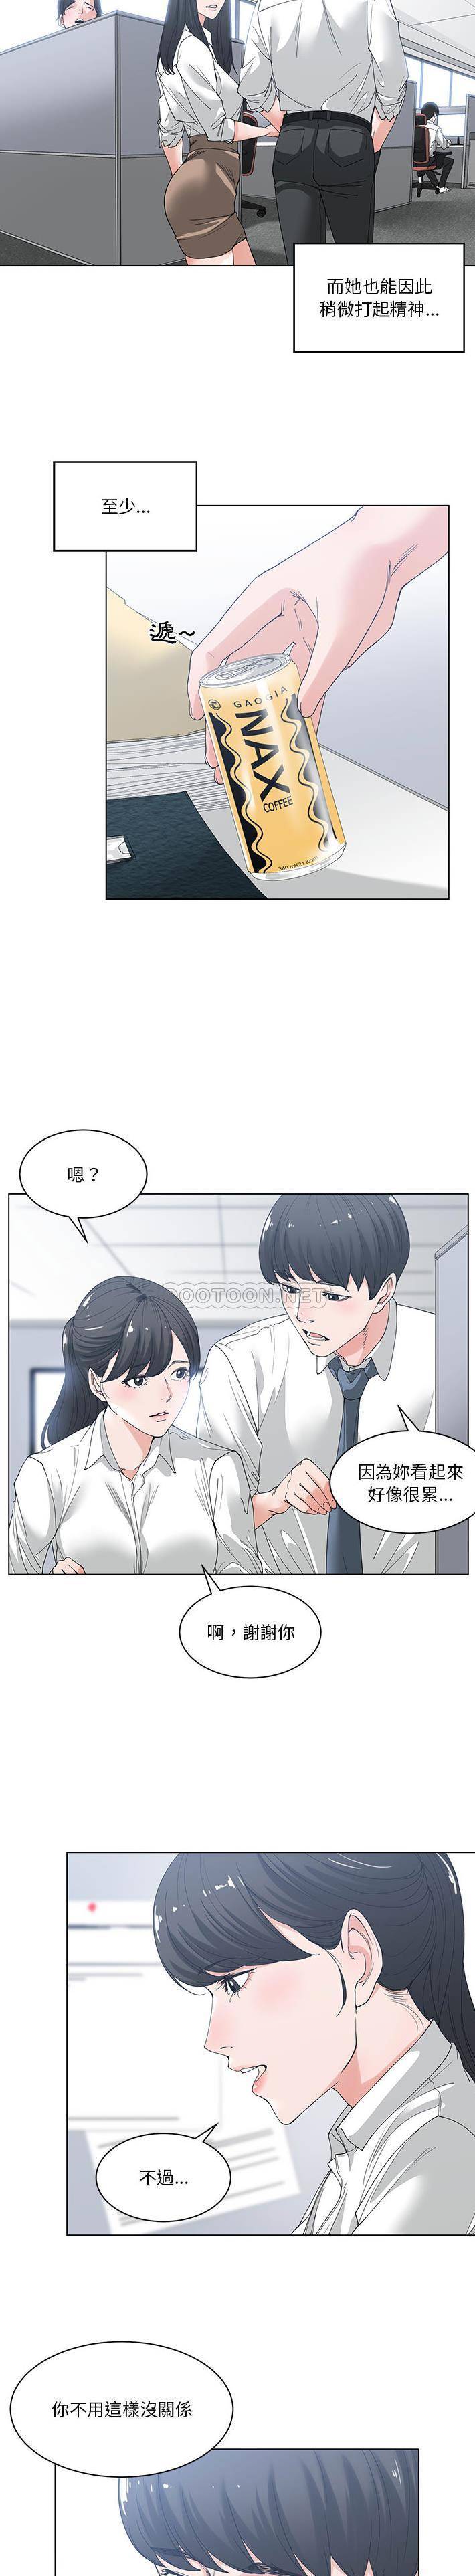 韩国污漫画 你才是真愛 第2话 9